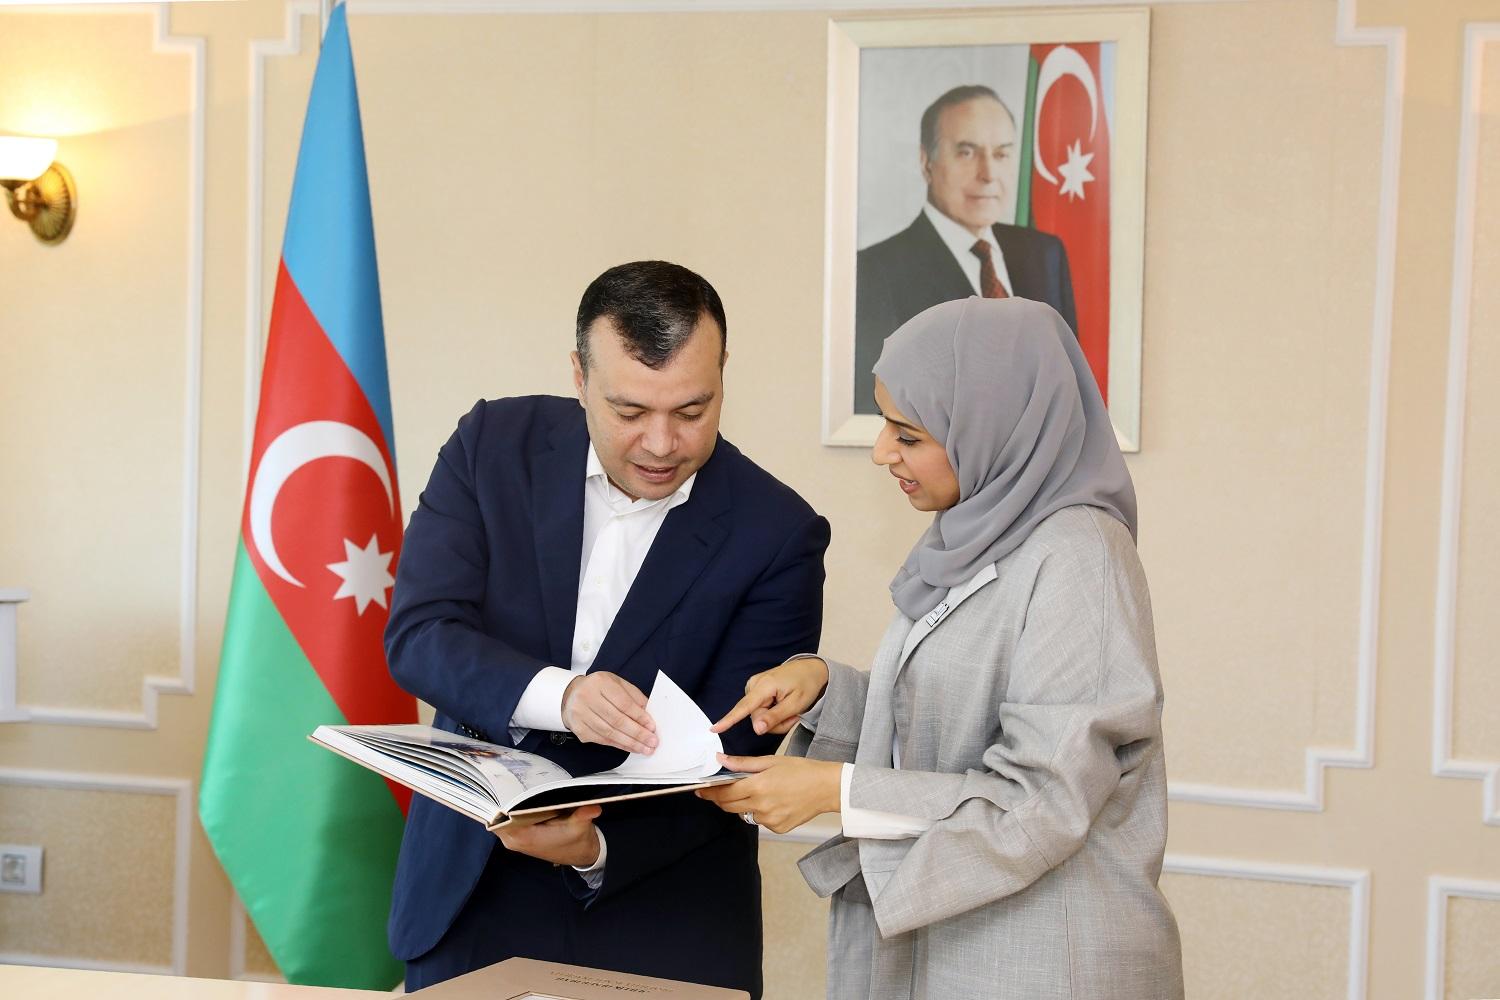 Азербайджан и ОАЭ намерены сотрудничать в сфере труда и соцзащиты - министр (ФОТО) - Gallery Image